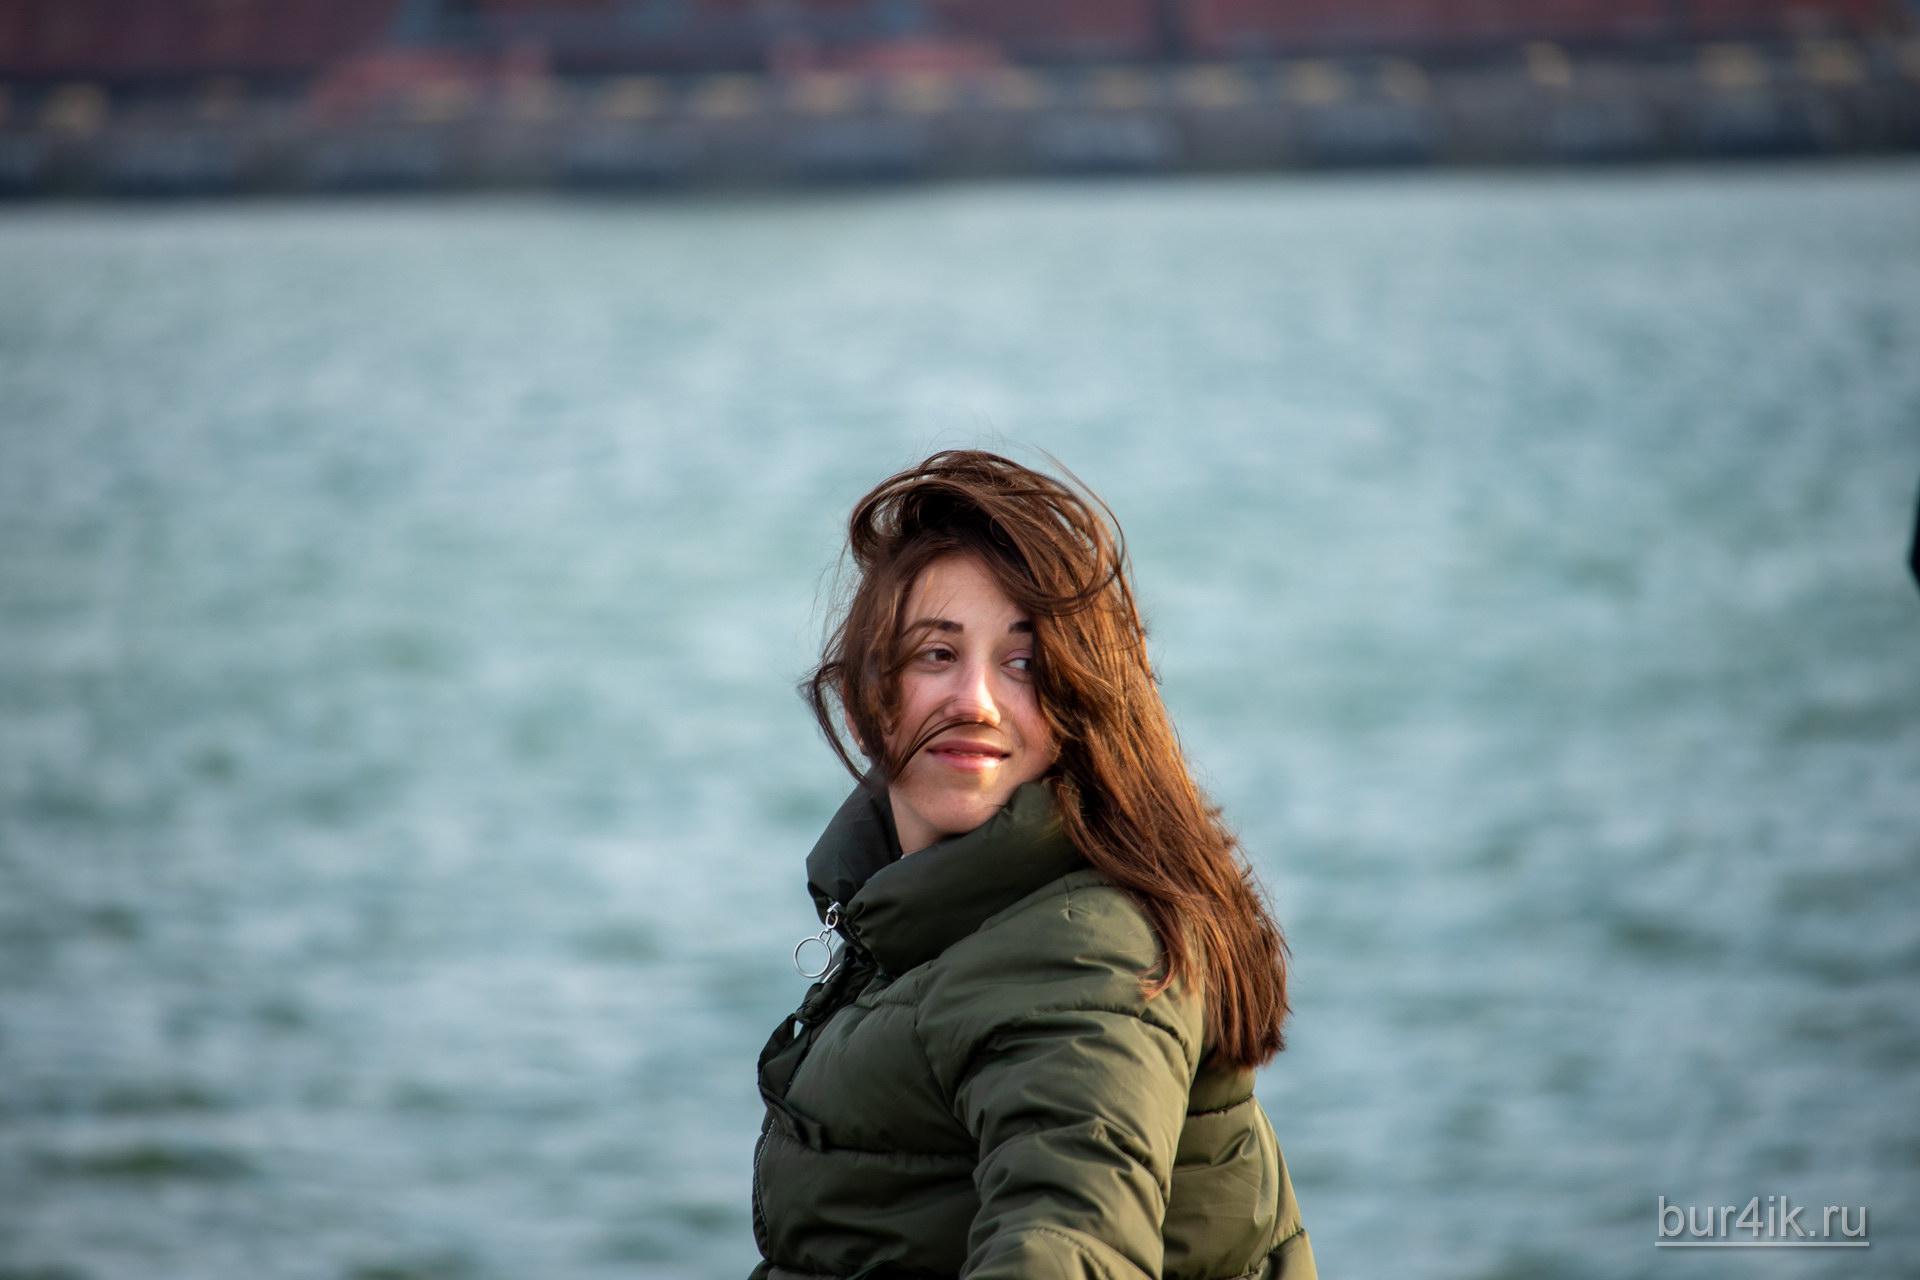 Портрет девушки в порту города Одесса